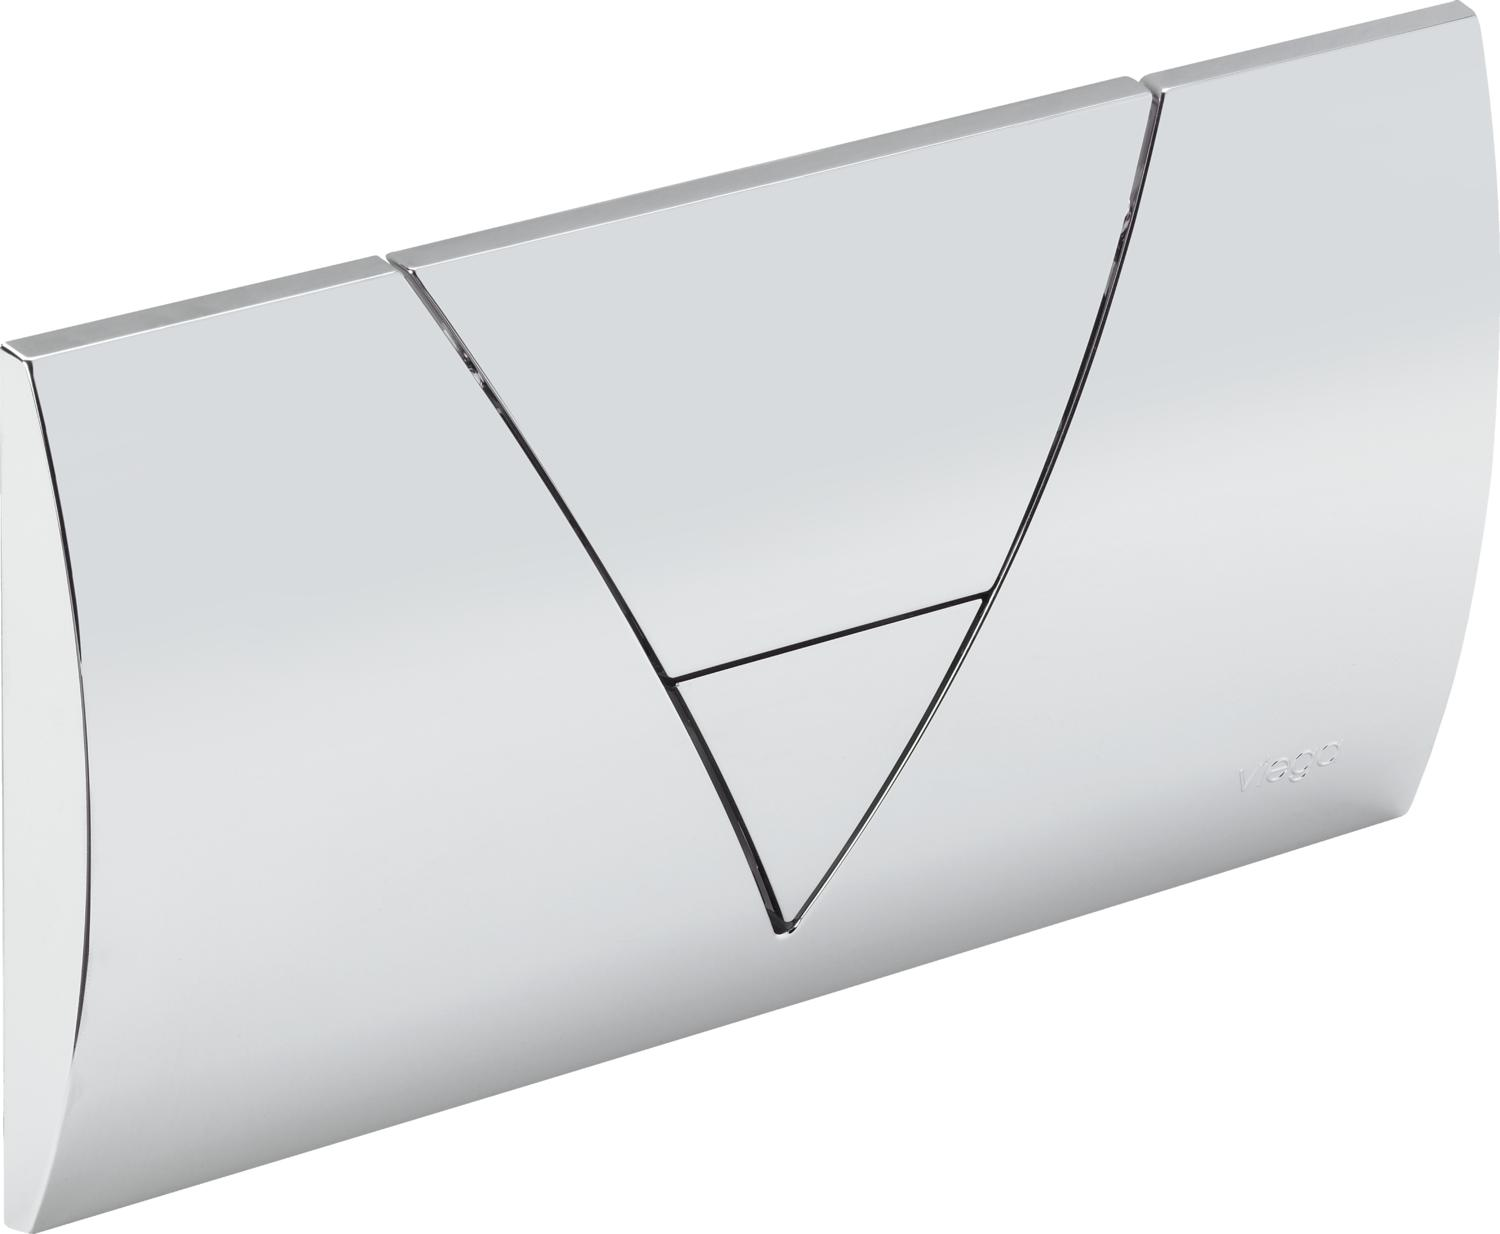 WC-Betätigungsplatte VIEGA VISIGN FOR LIFE 1 Modell 8310.3, verchromt